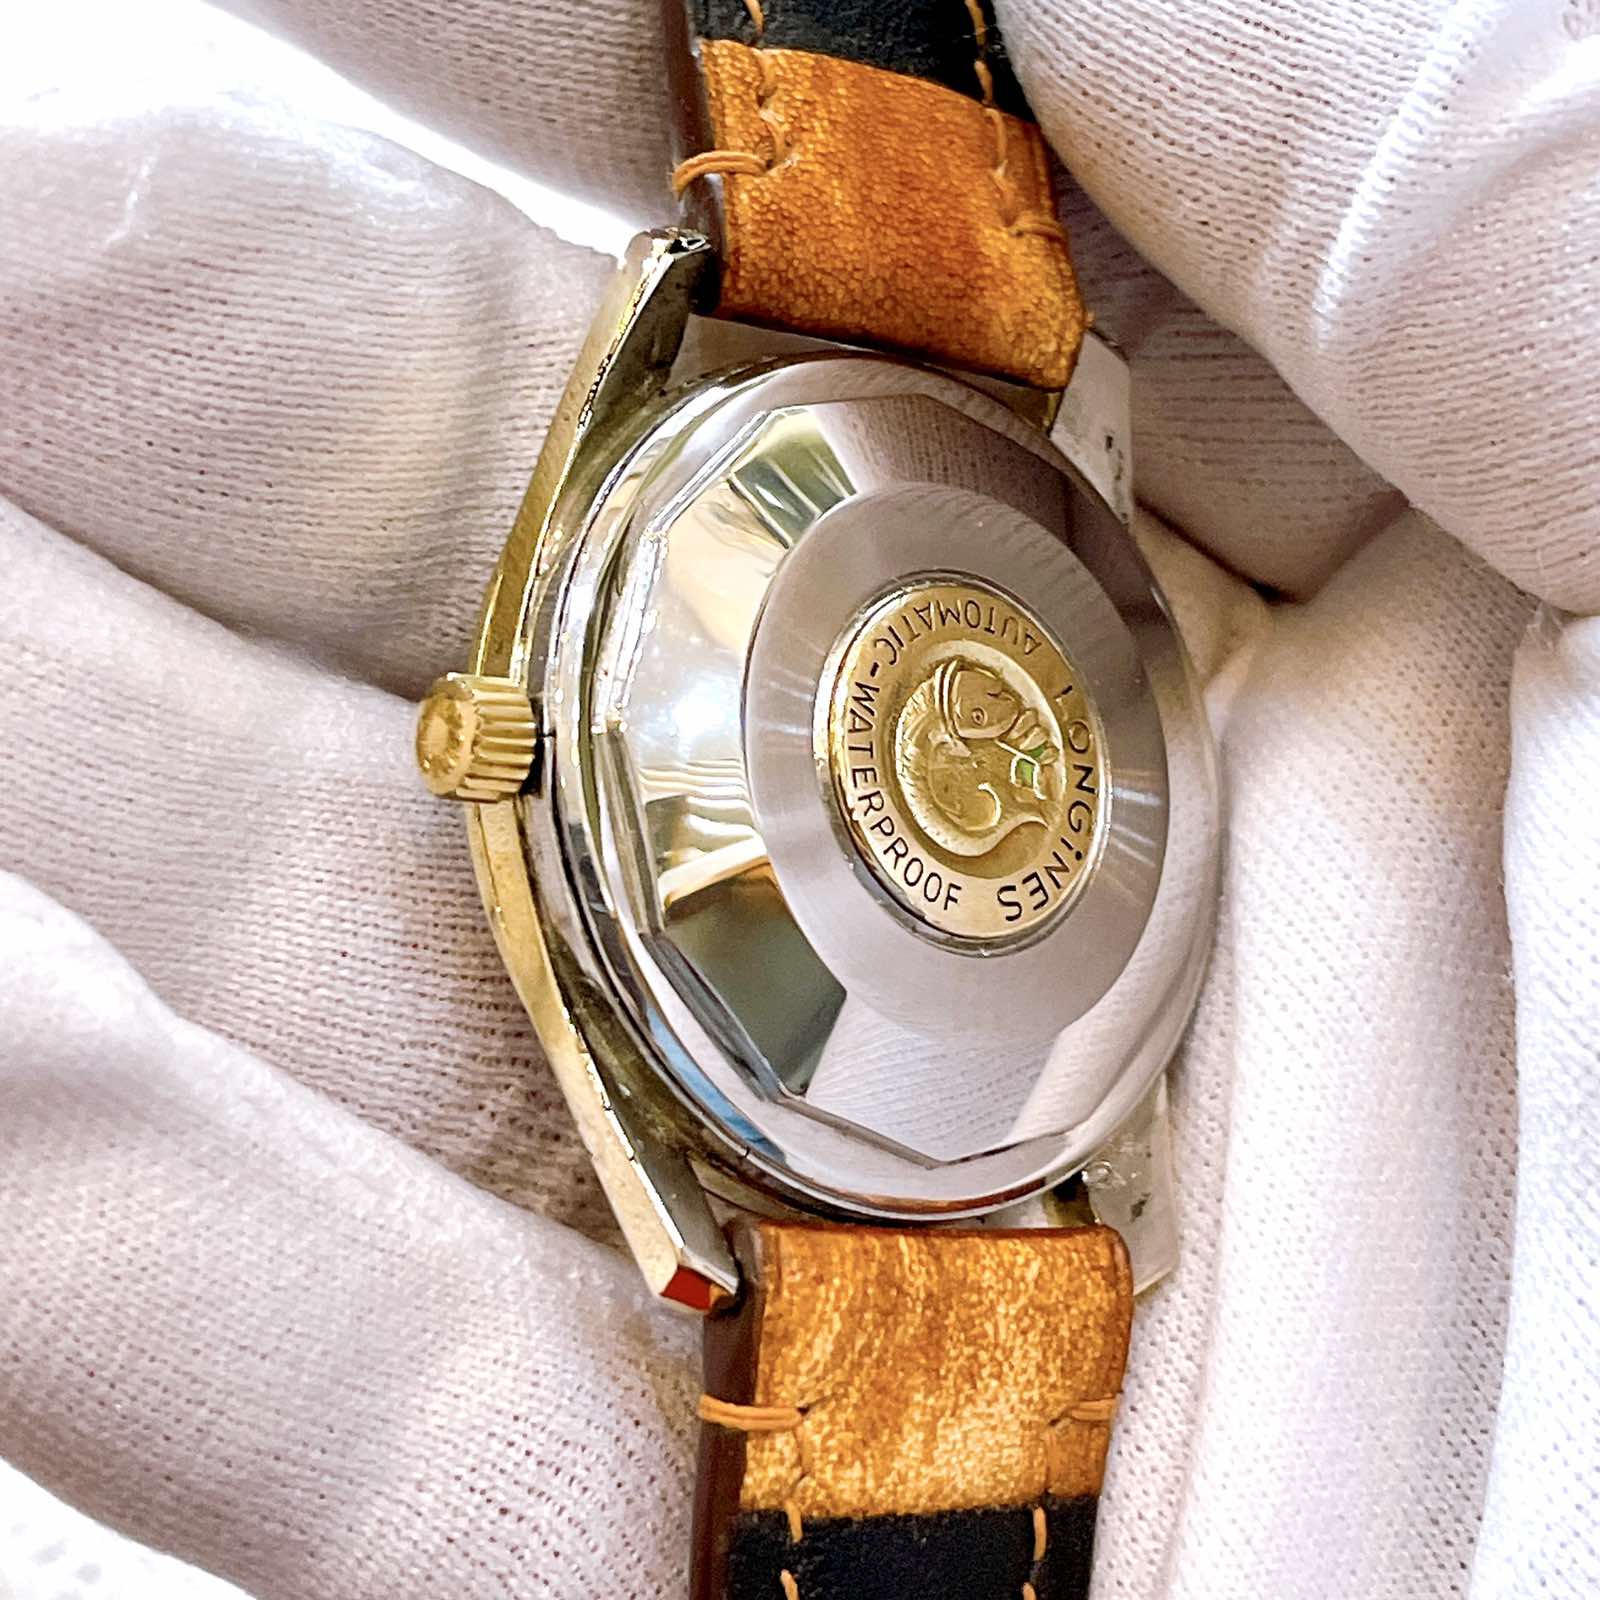 Đồng hồ cổ Longines conquest Automatic chính hãng Thụy Sĩ